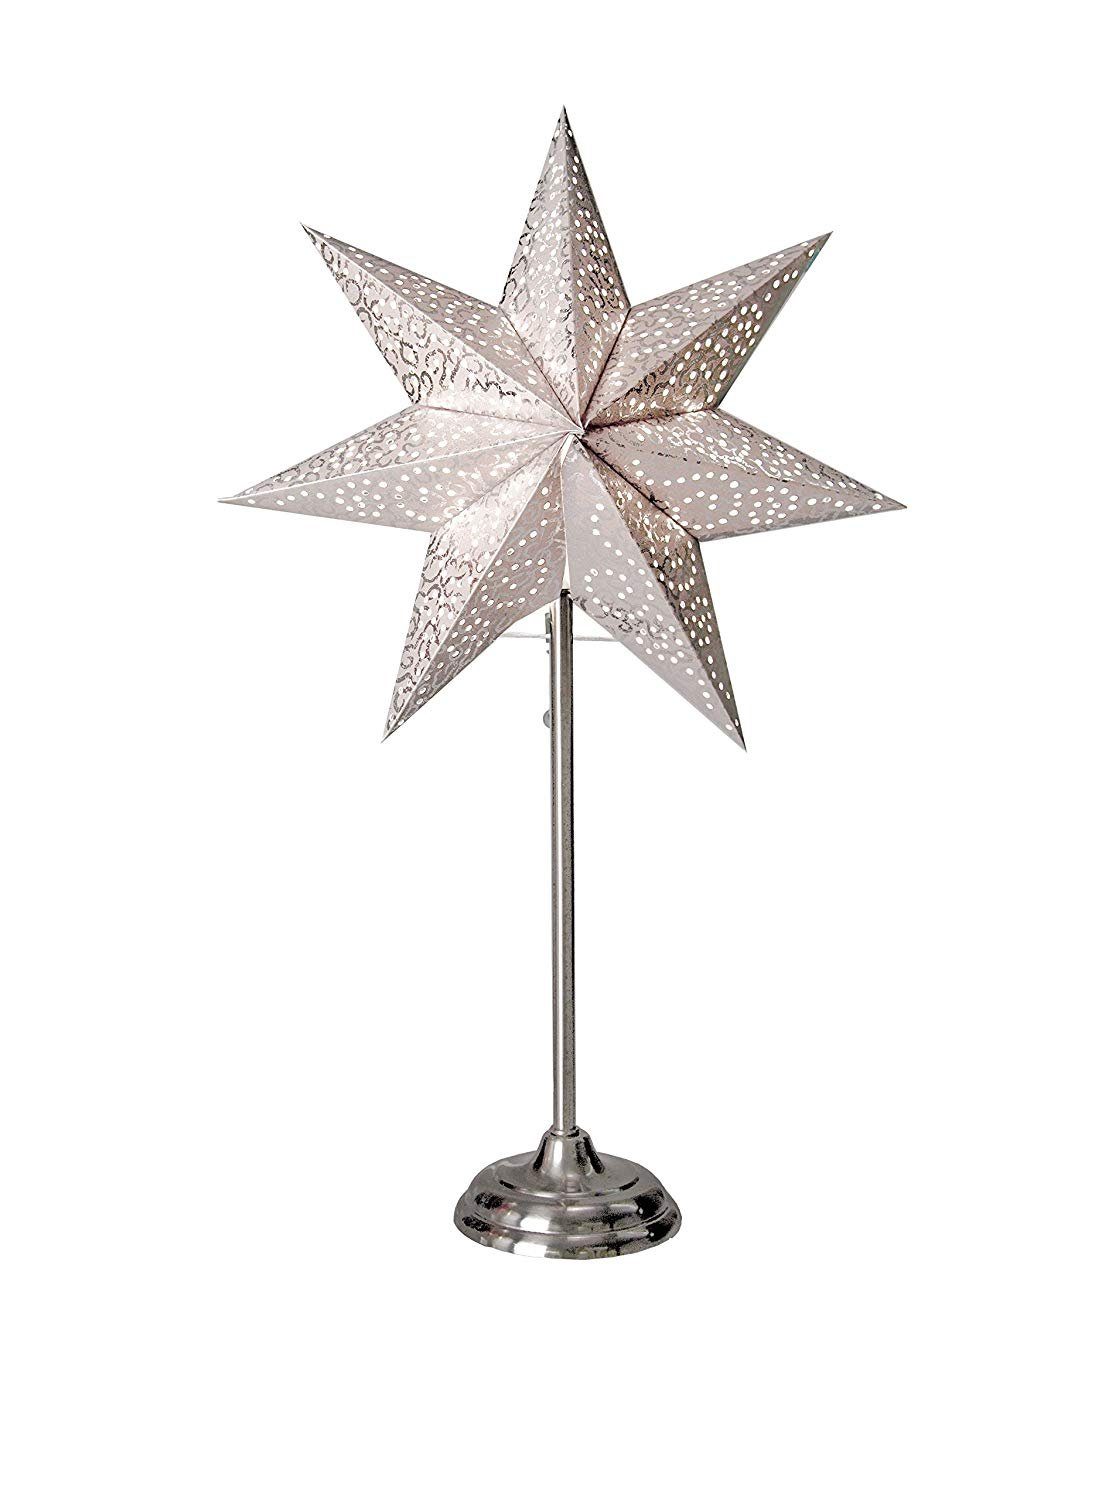 STAR TRADING LED Stern Star Antique Standleuchte, Papier, Weiß, 55 x 34 cm